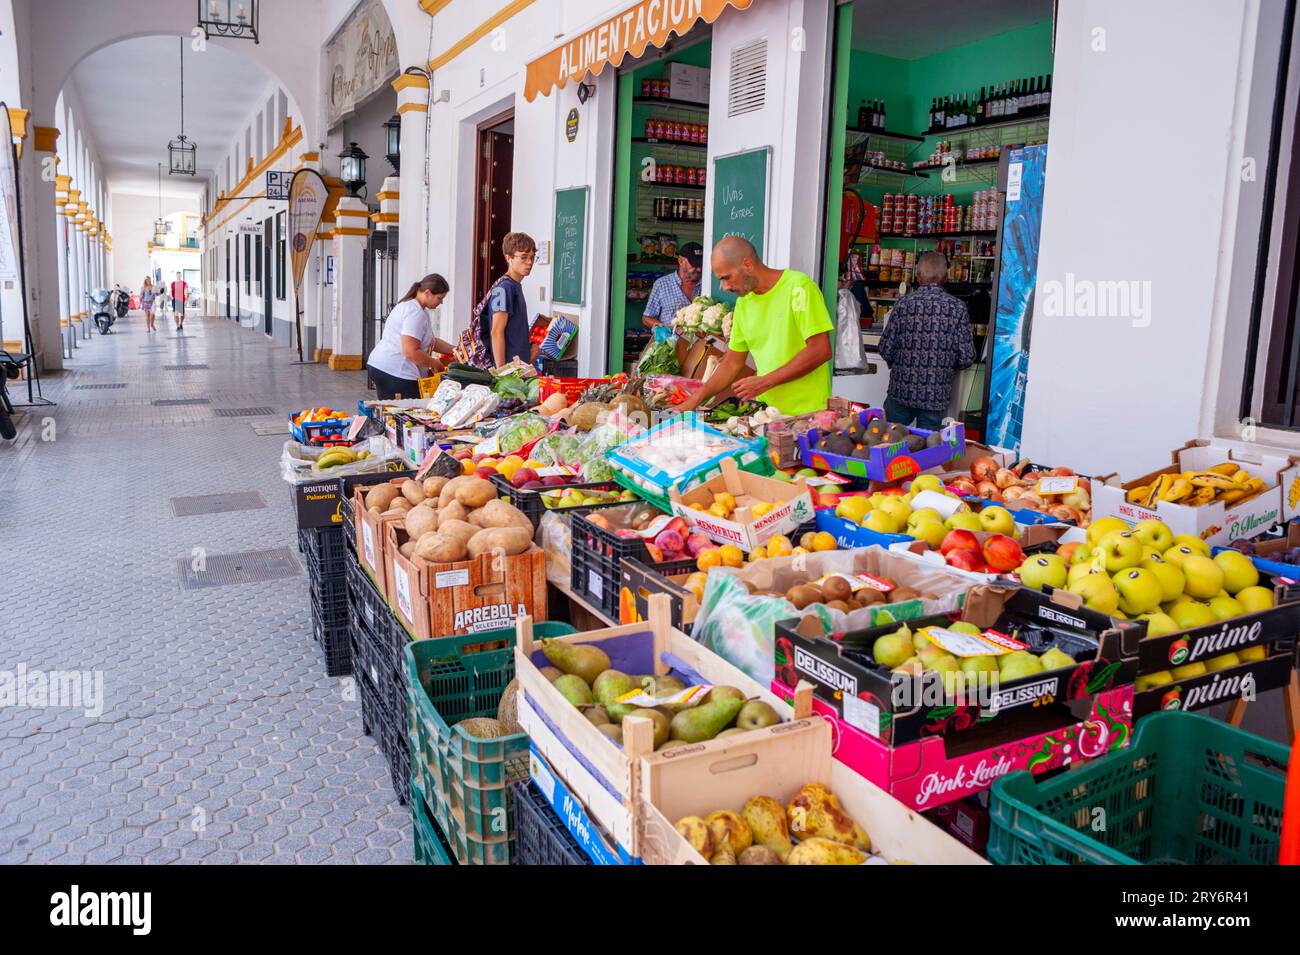 Sevilla, Spanien, kleine Menschenmassen, Einkaufen auf dem öffentlichen Lebensmittelmarkt, 'El Arenal Market', in der Altstadt, lokale Lebensmittelgeschäfte anzeigen Stockfoto